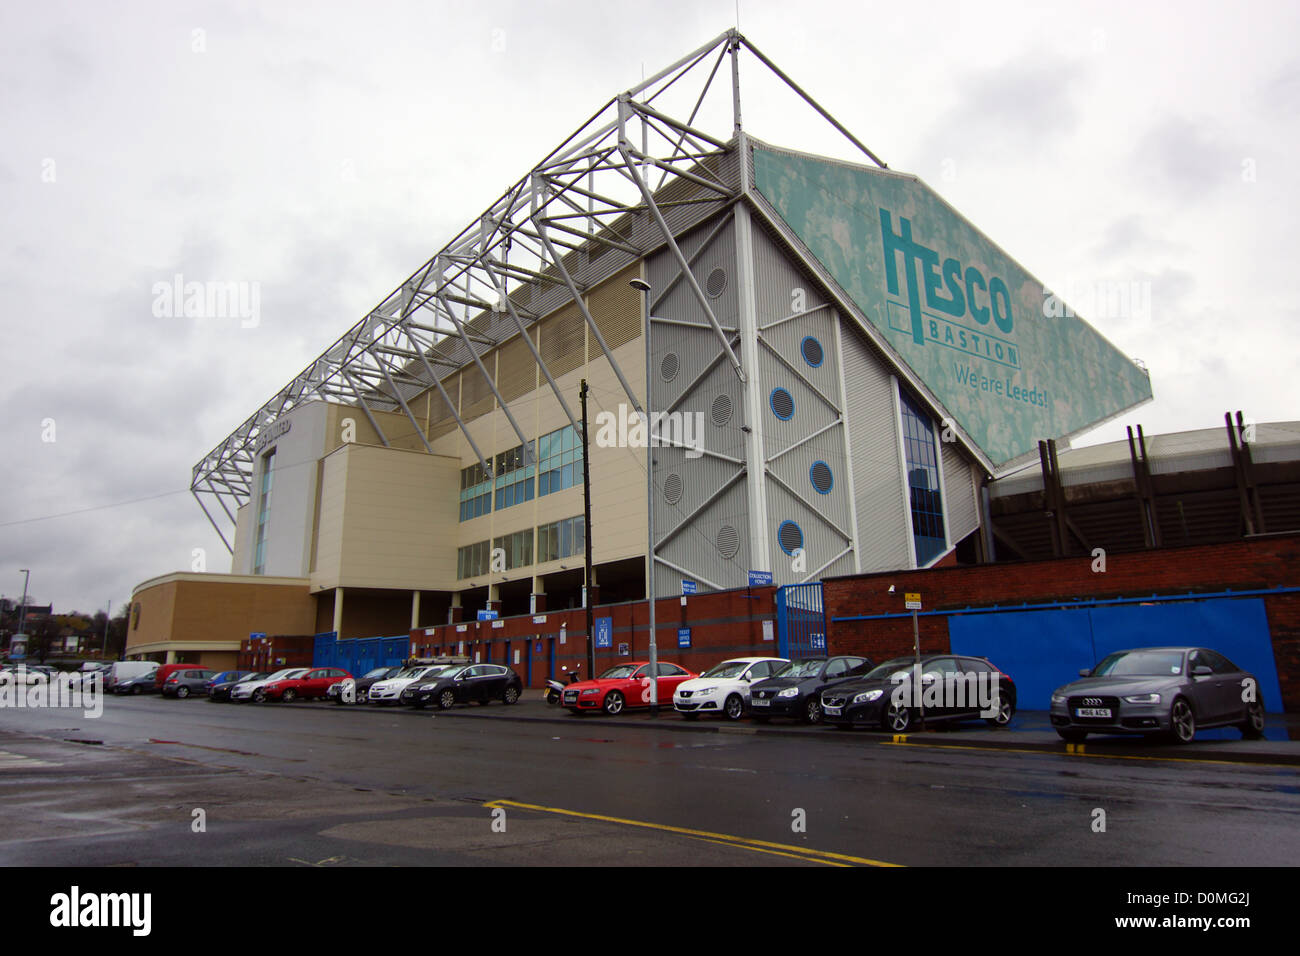 Leeds United Elland Road football ground Stock Photo